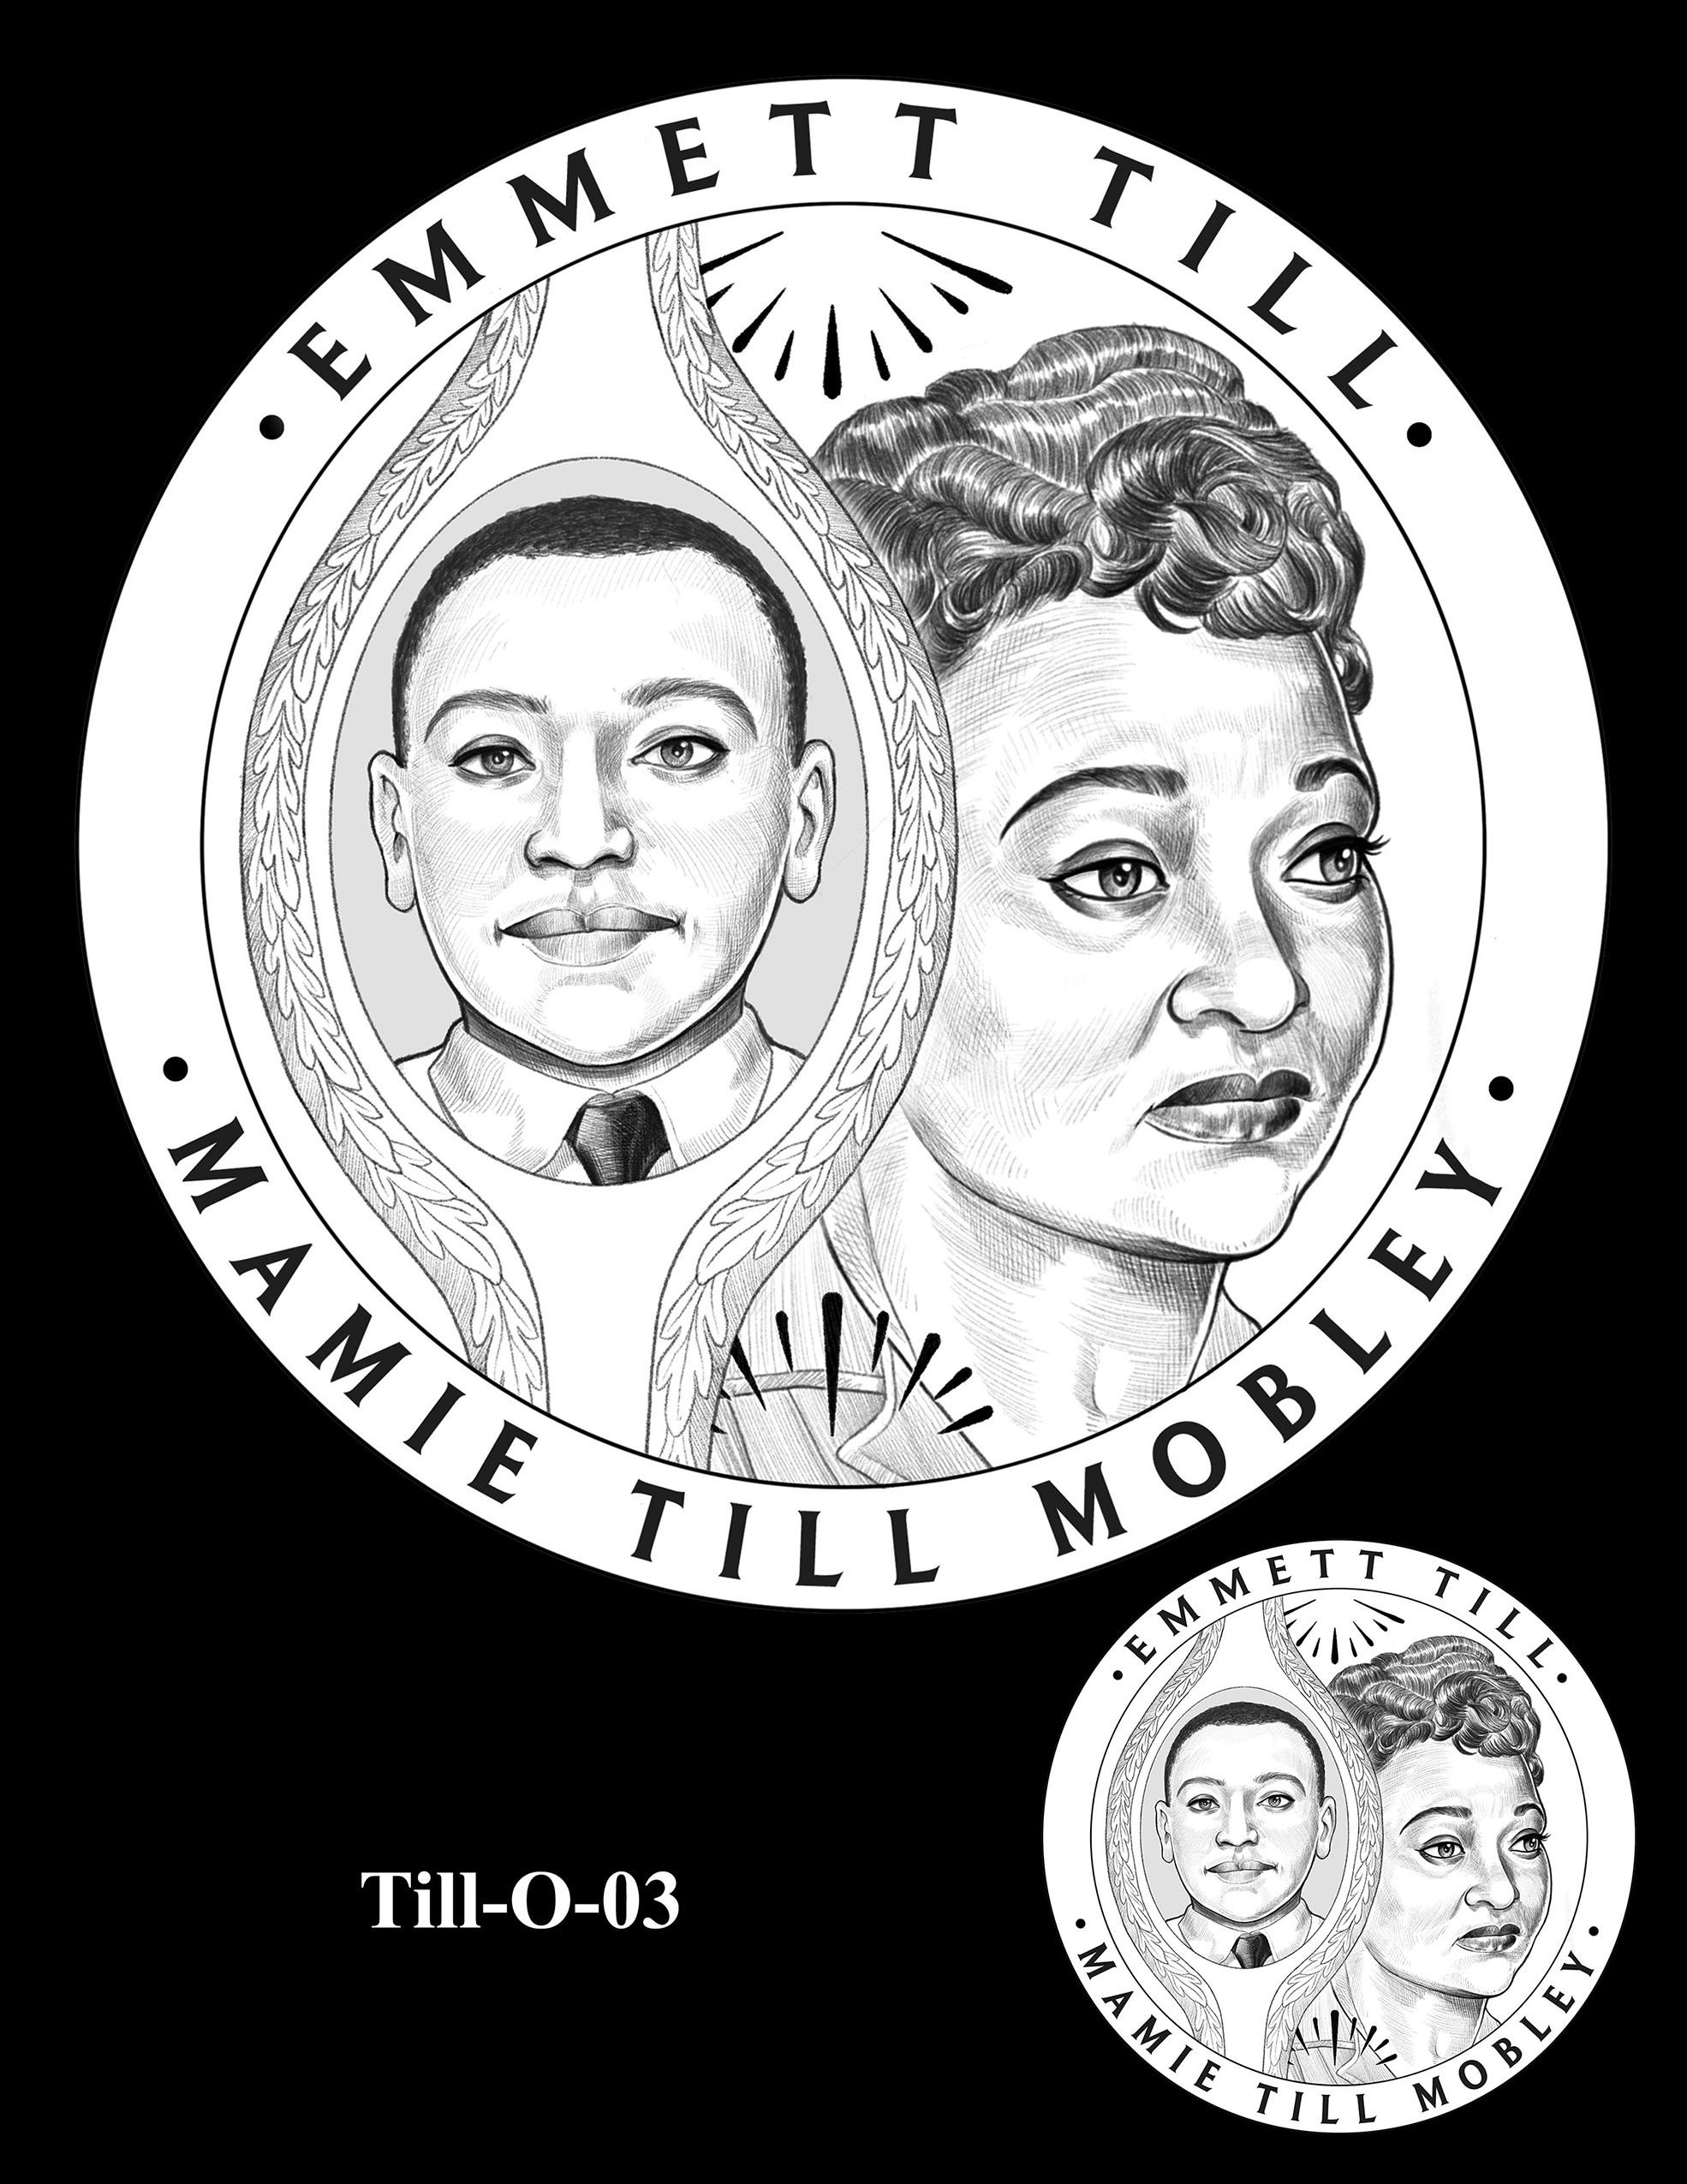 Till-O-03 -- Emmett Till and Mamie Till Mobley Congressional Gold Medal